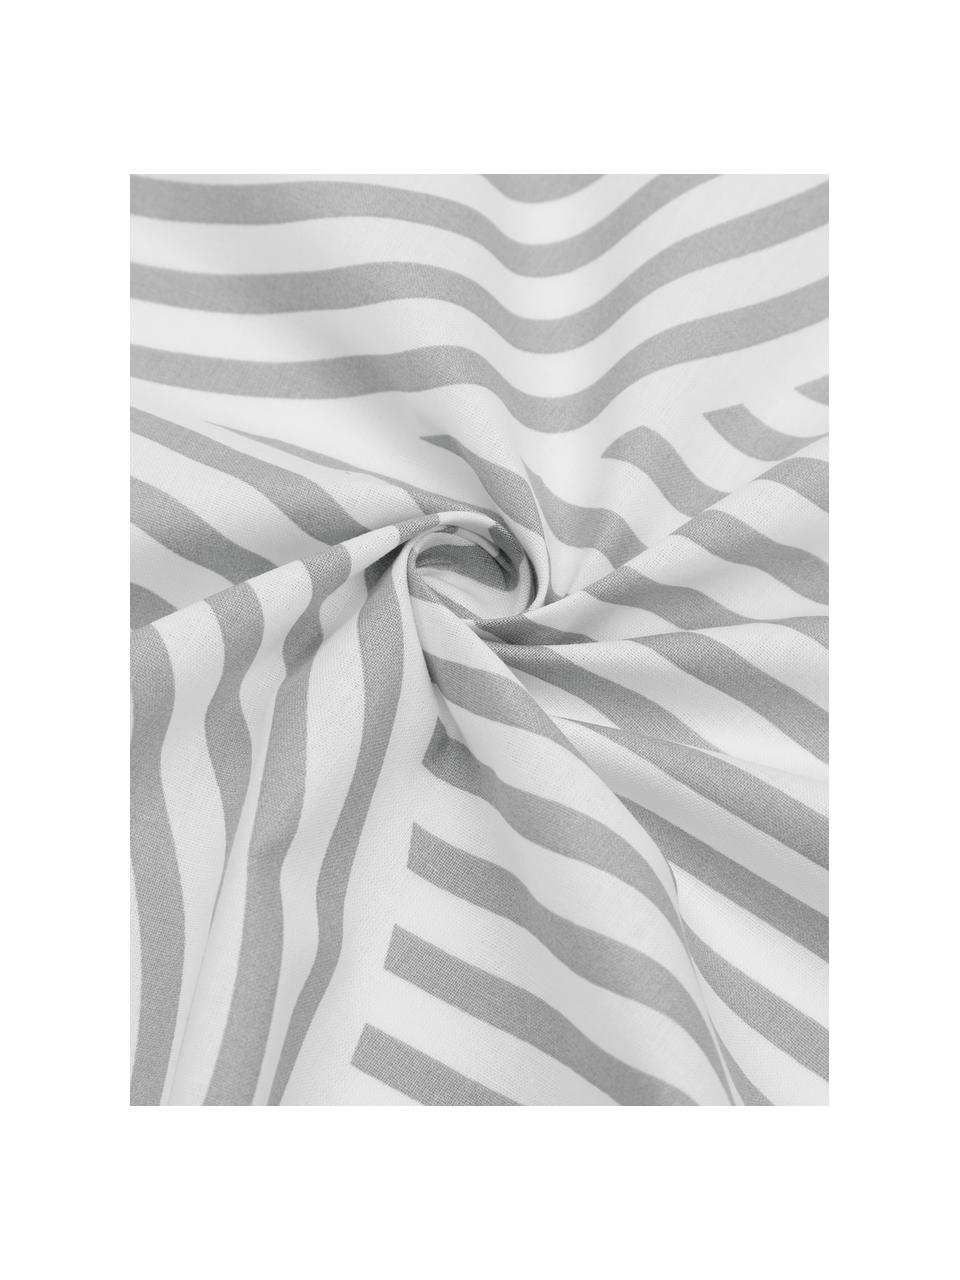 Gemusterte Baumwoll-Bettwäsche Arcs in Grau/Weiß, Webart: Renforcé Fadendichte 144 , Grau, Weiß, 200 x 200 cm + 2 Kissen 80 x 80 cm